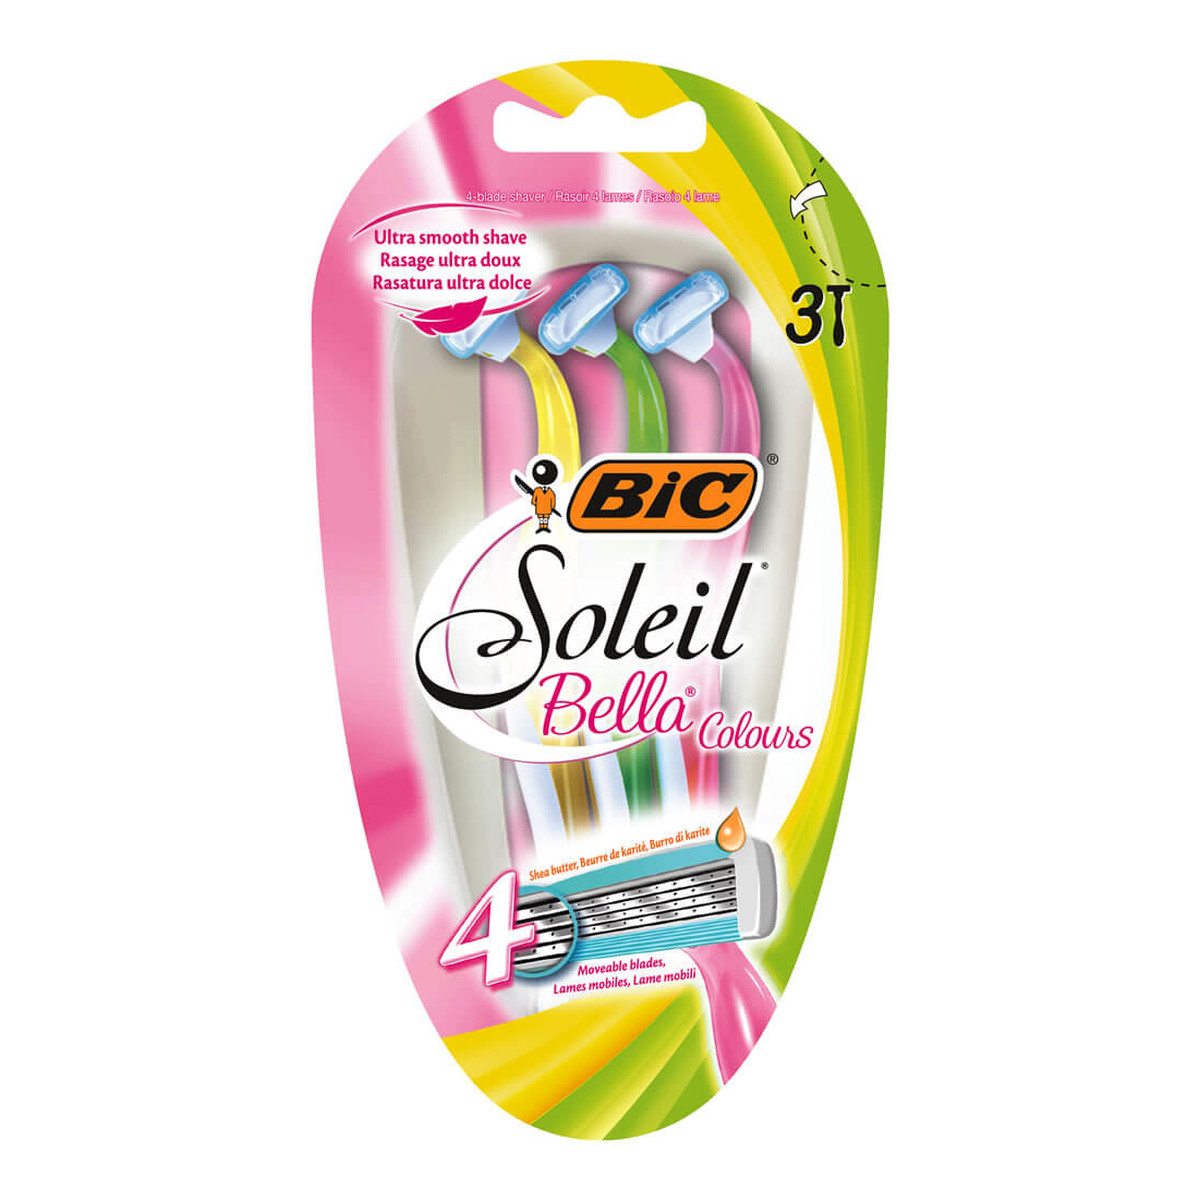 Bic Soleil Bella Colours maszynka do golenia dla kobiet 3 szt.